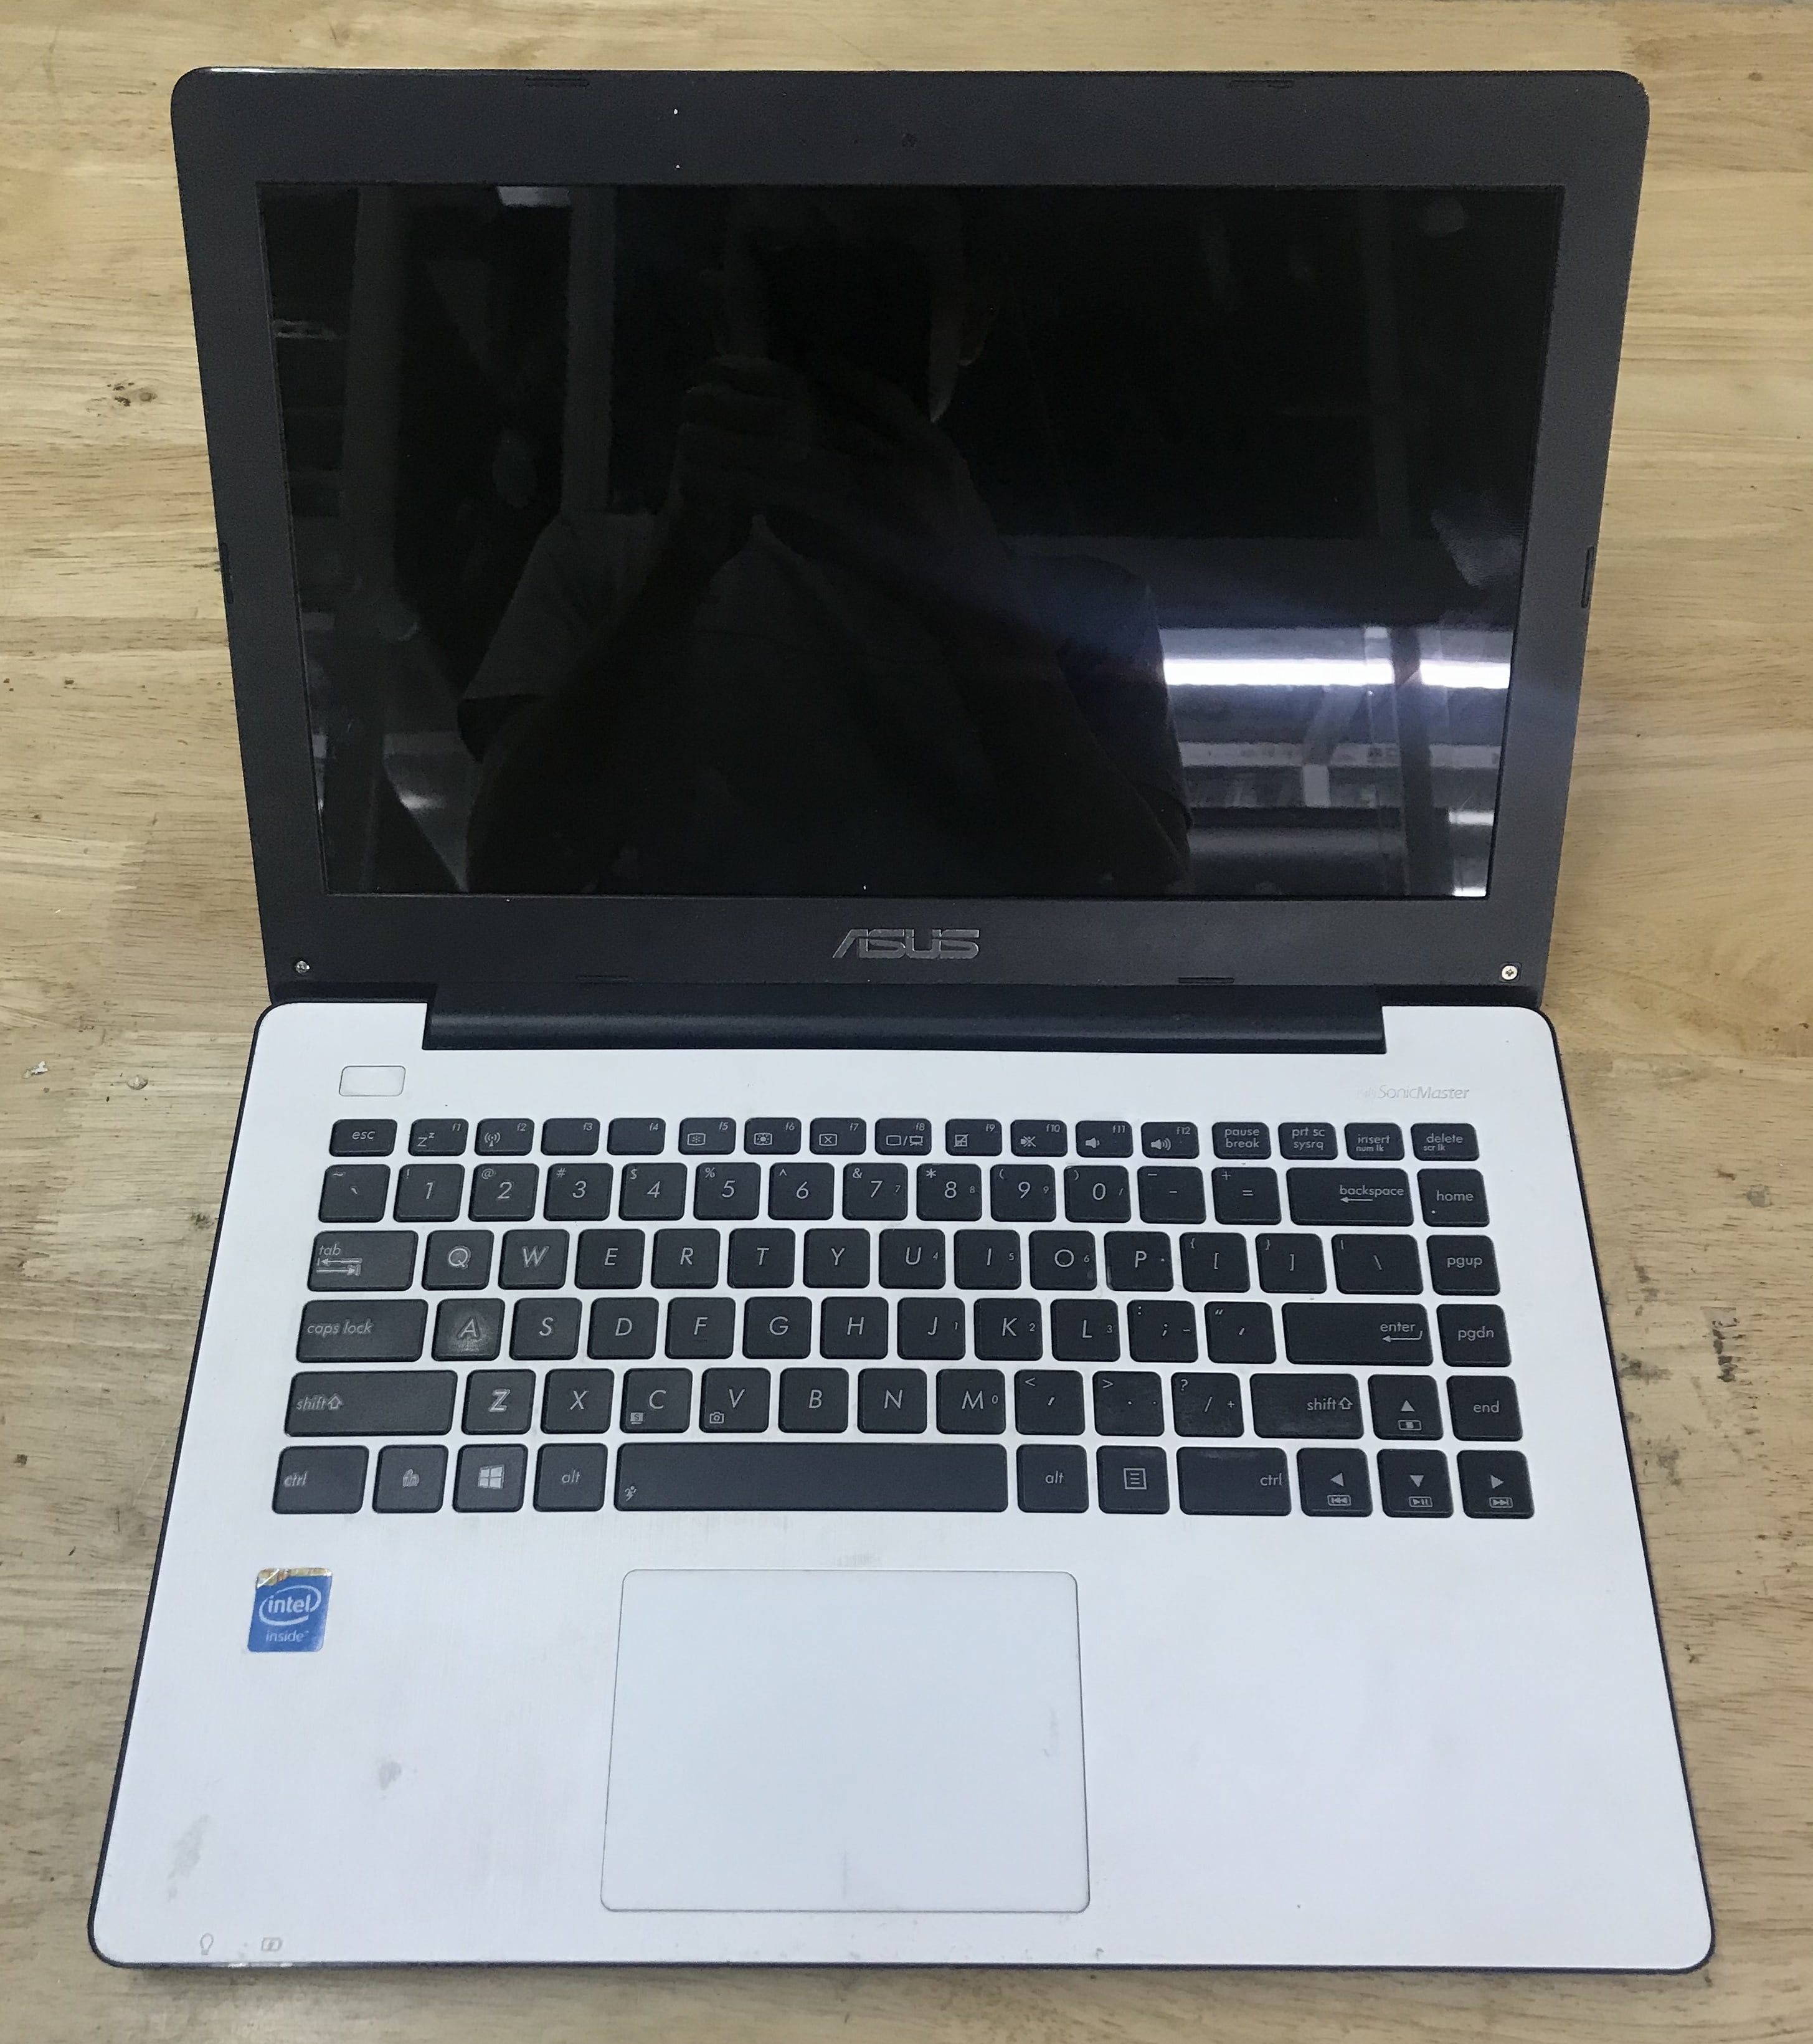 Thay vỏ laptop Asus X453M